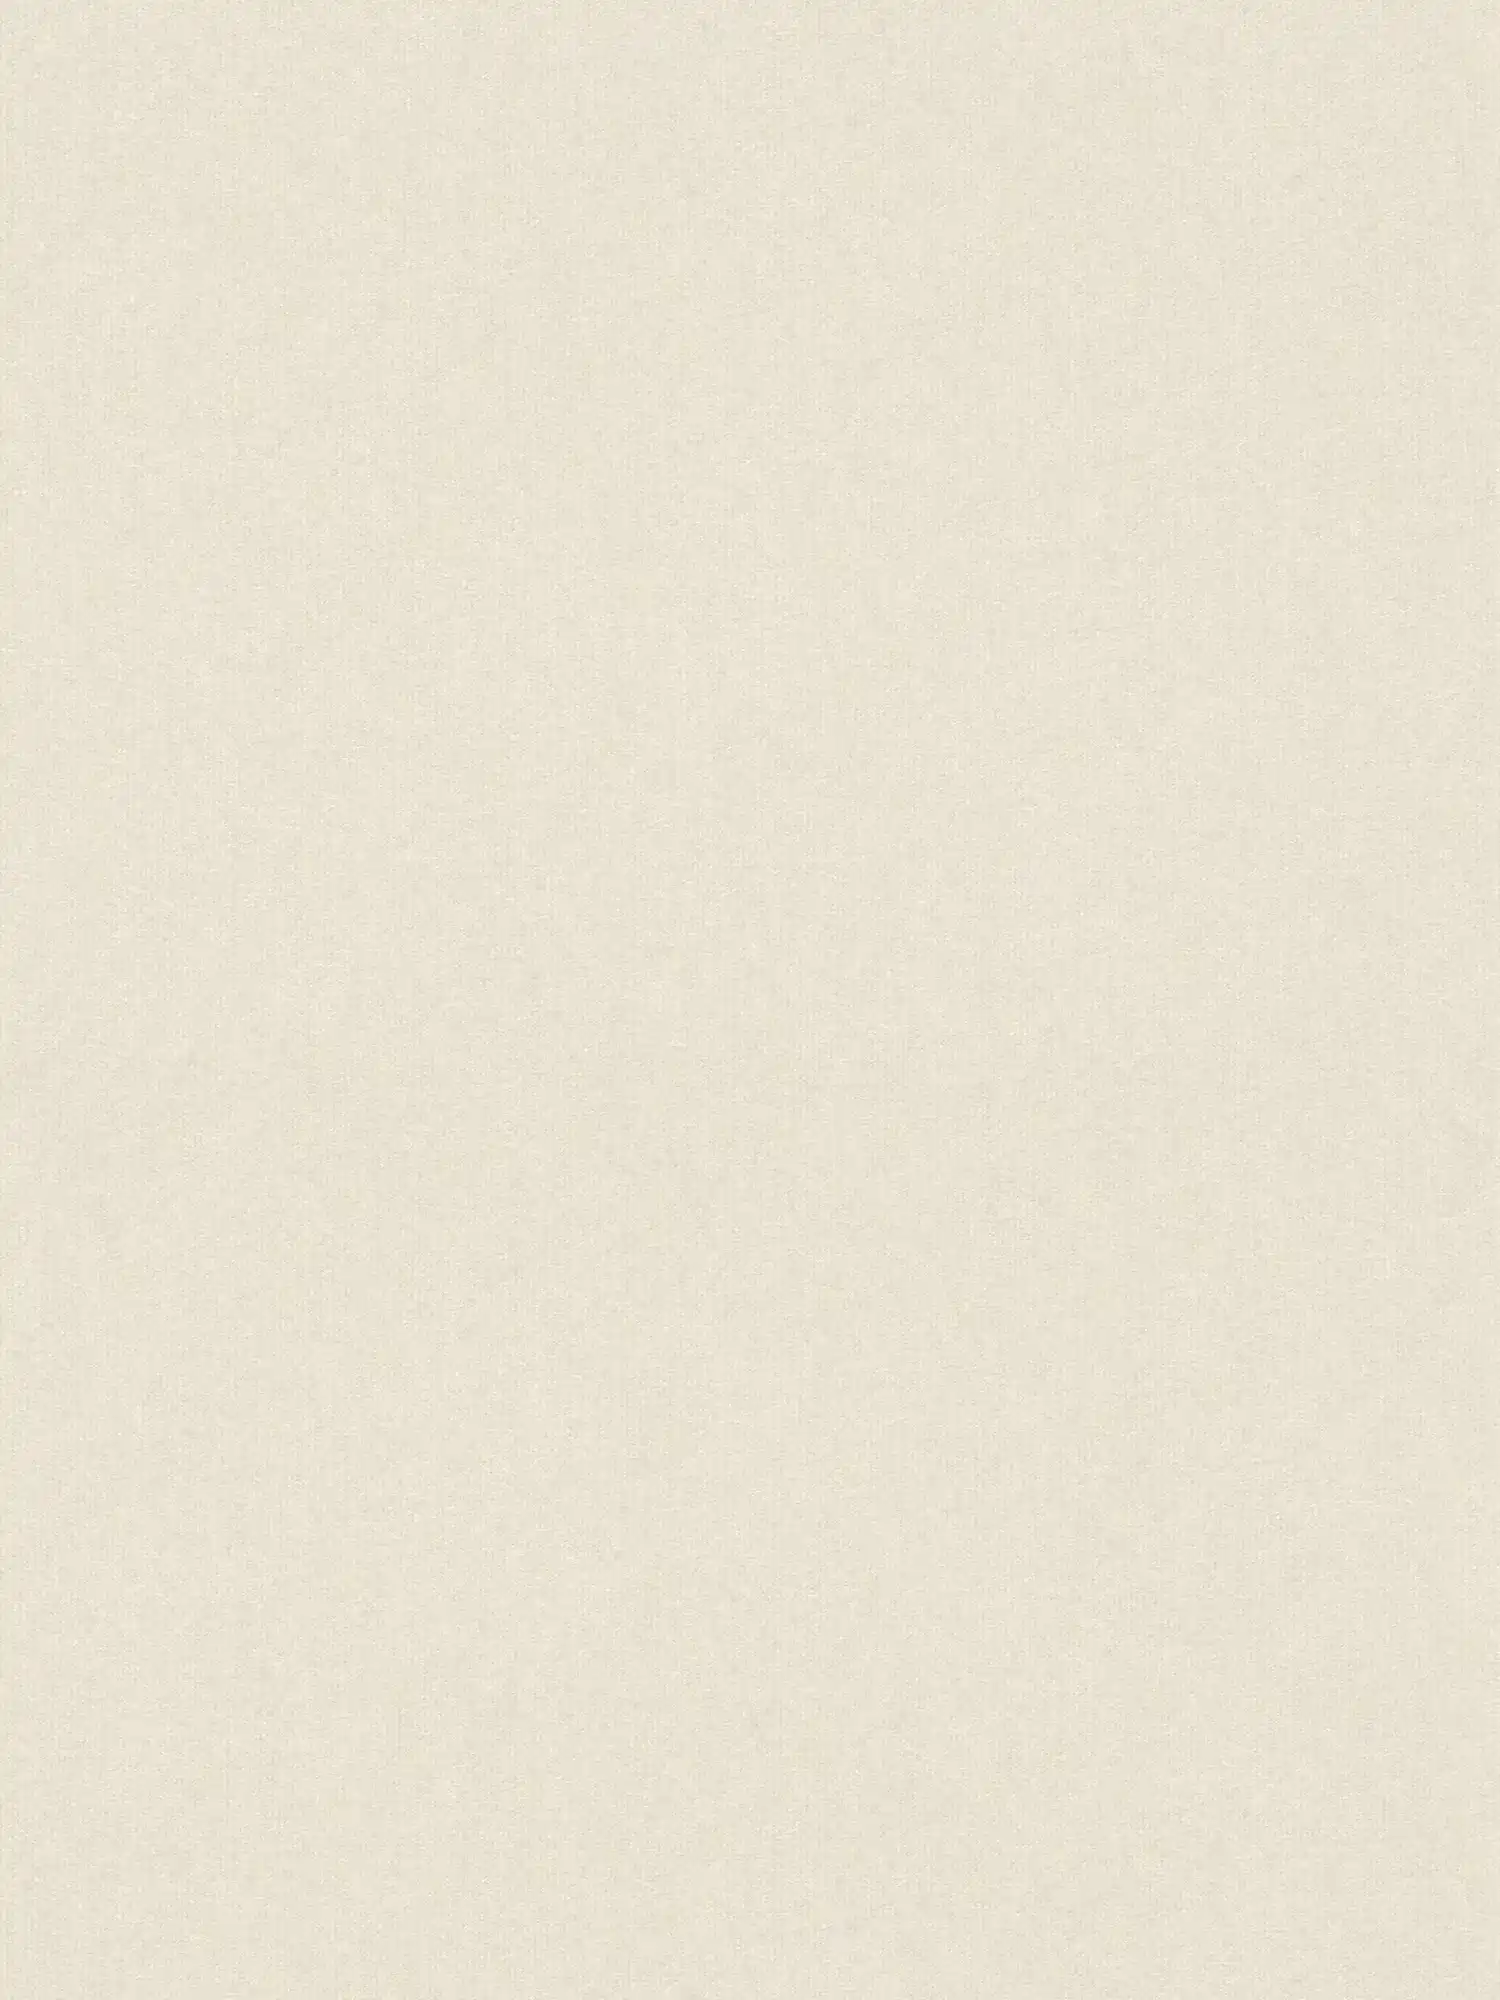 Carta da parati beige chiaro con disegno tessile ed effetto shimmer - Beige
